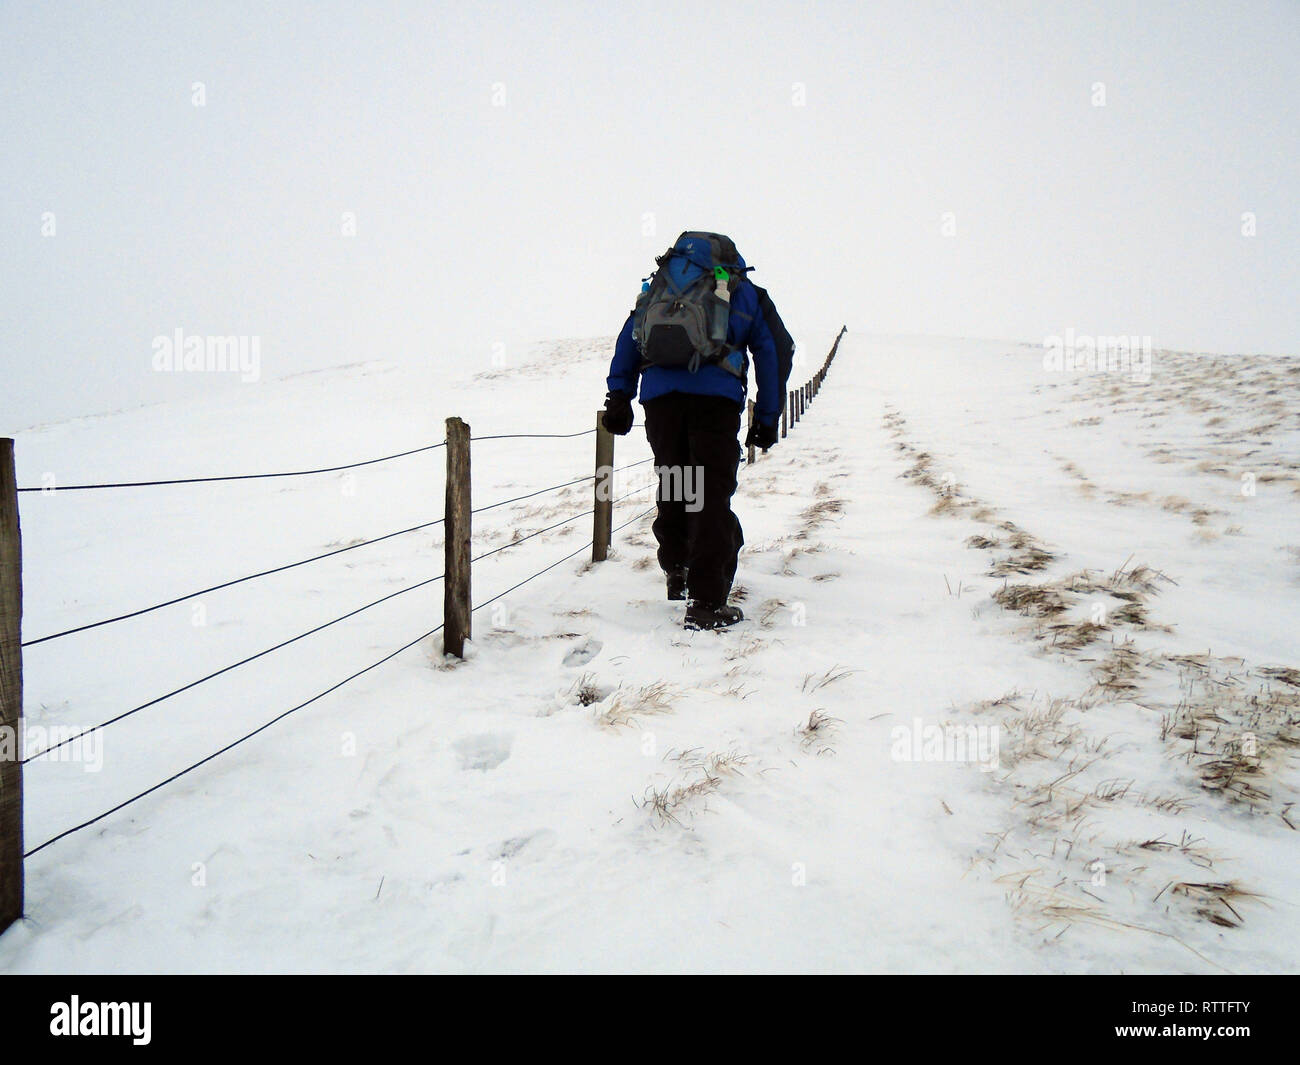 Maschio solitario escursionista a piedi nella neve sul percorso verso la montagna scozzese Corbett Hart cadde, Moffat Dale, Scottish Borders, Scotland, Regno Unito Foto Stock